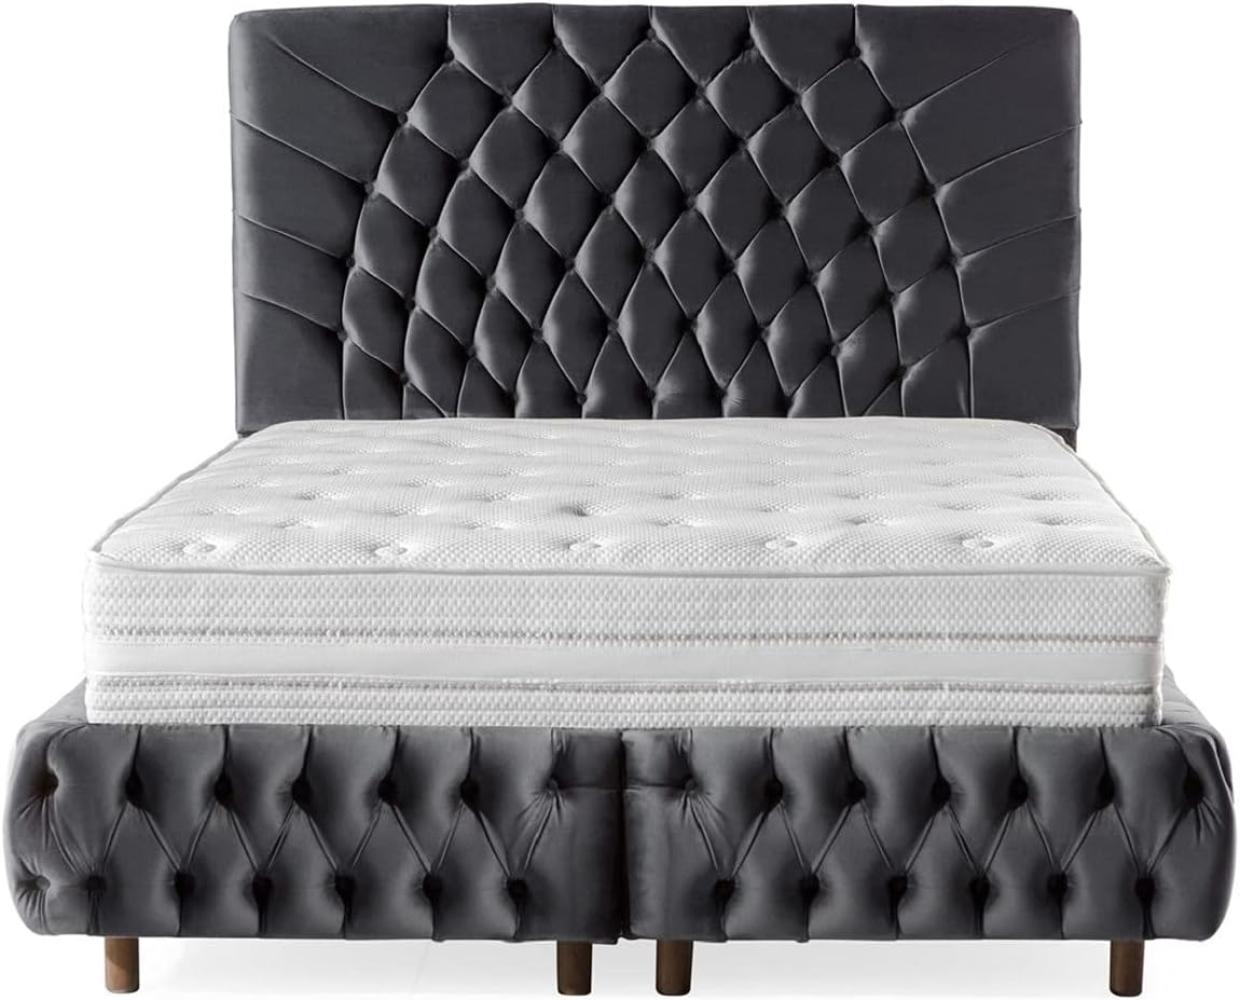 Casa Padrino Luxus Doppelbett Grau / Braun - Verschiedene Größen - Modernes Bett mit Matratze - Schlafzimmer Möbel Bild 1